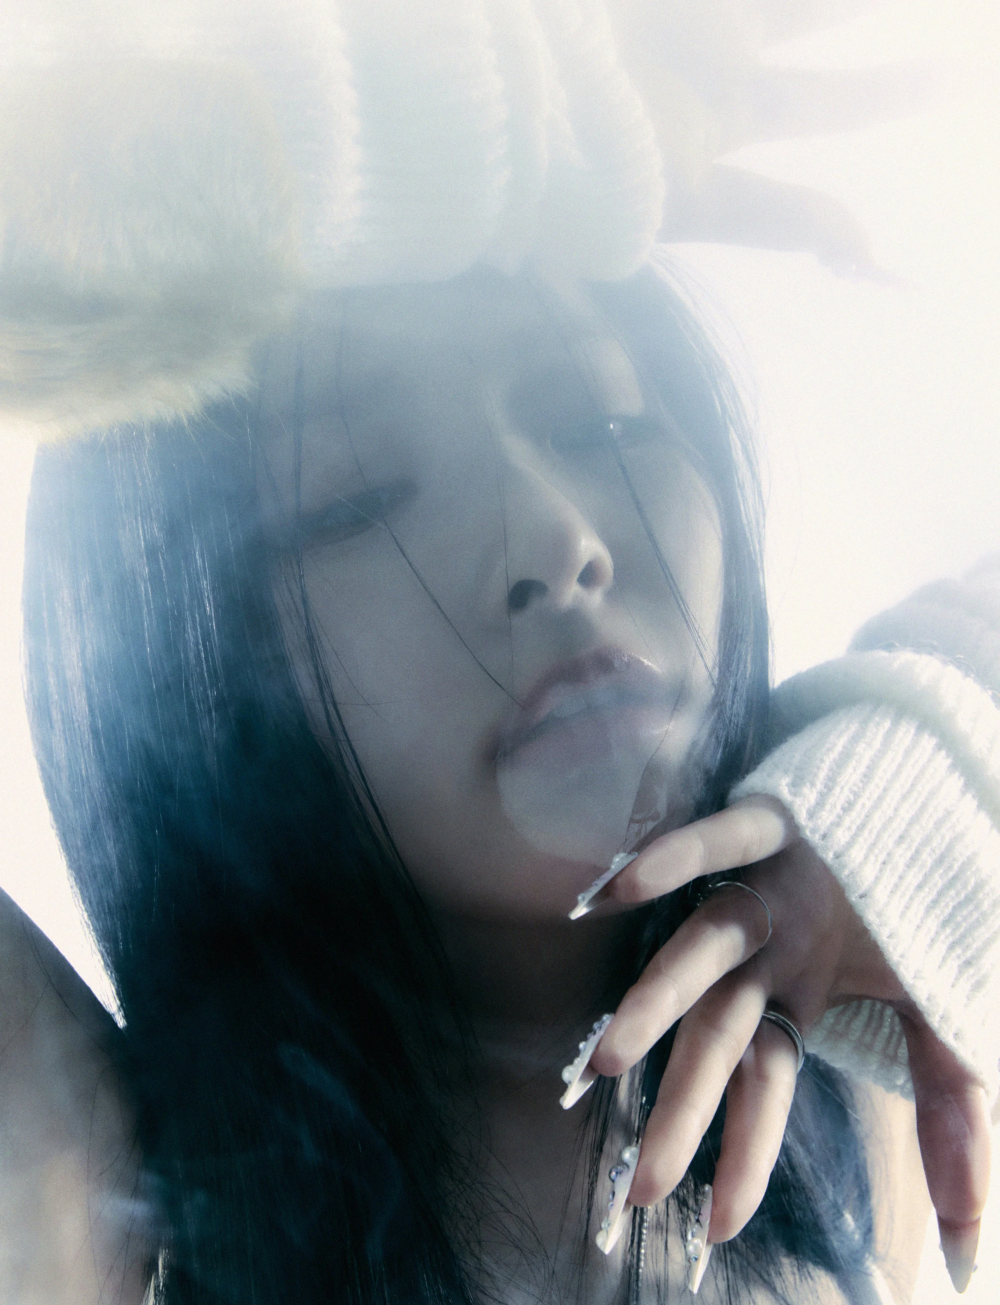 [Дебют] Сыльги из Red Velvet мини-альбом "28 Reasons": музыкальное видео